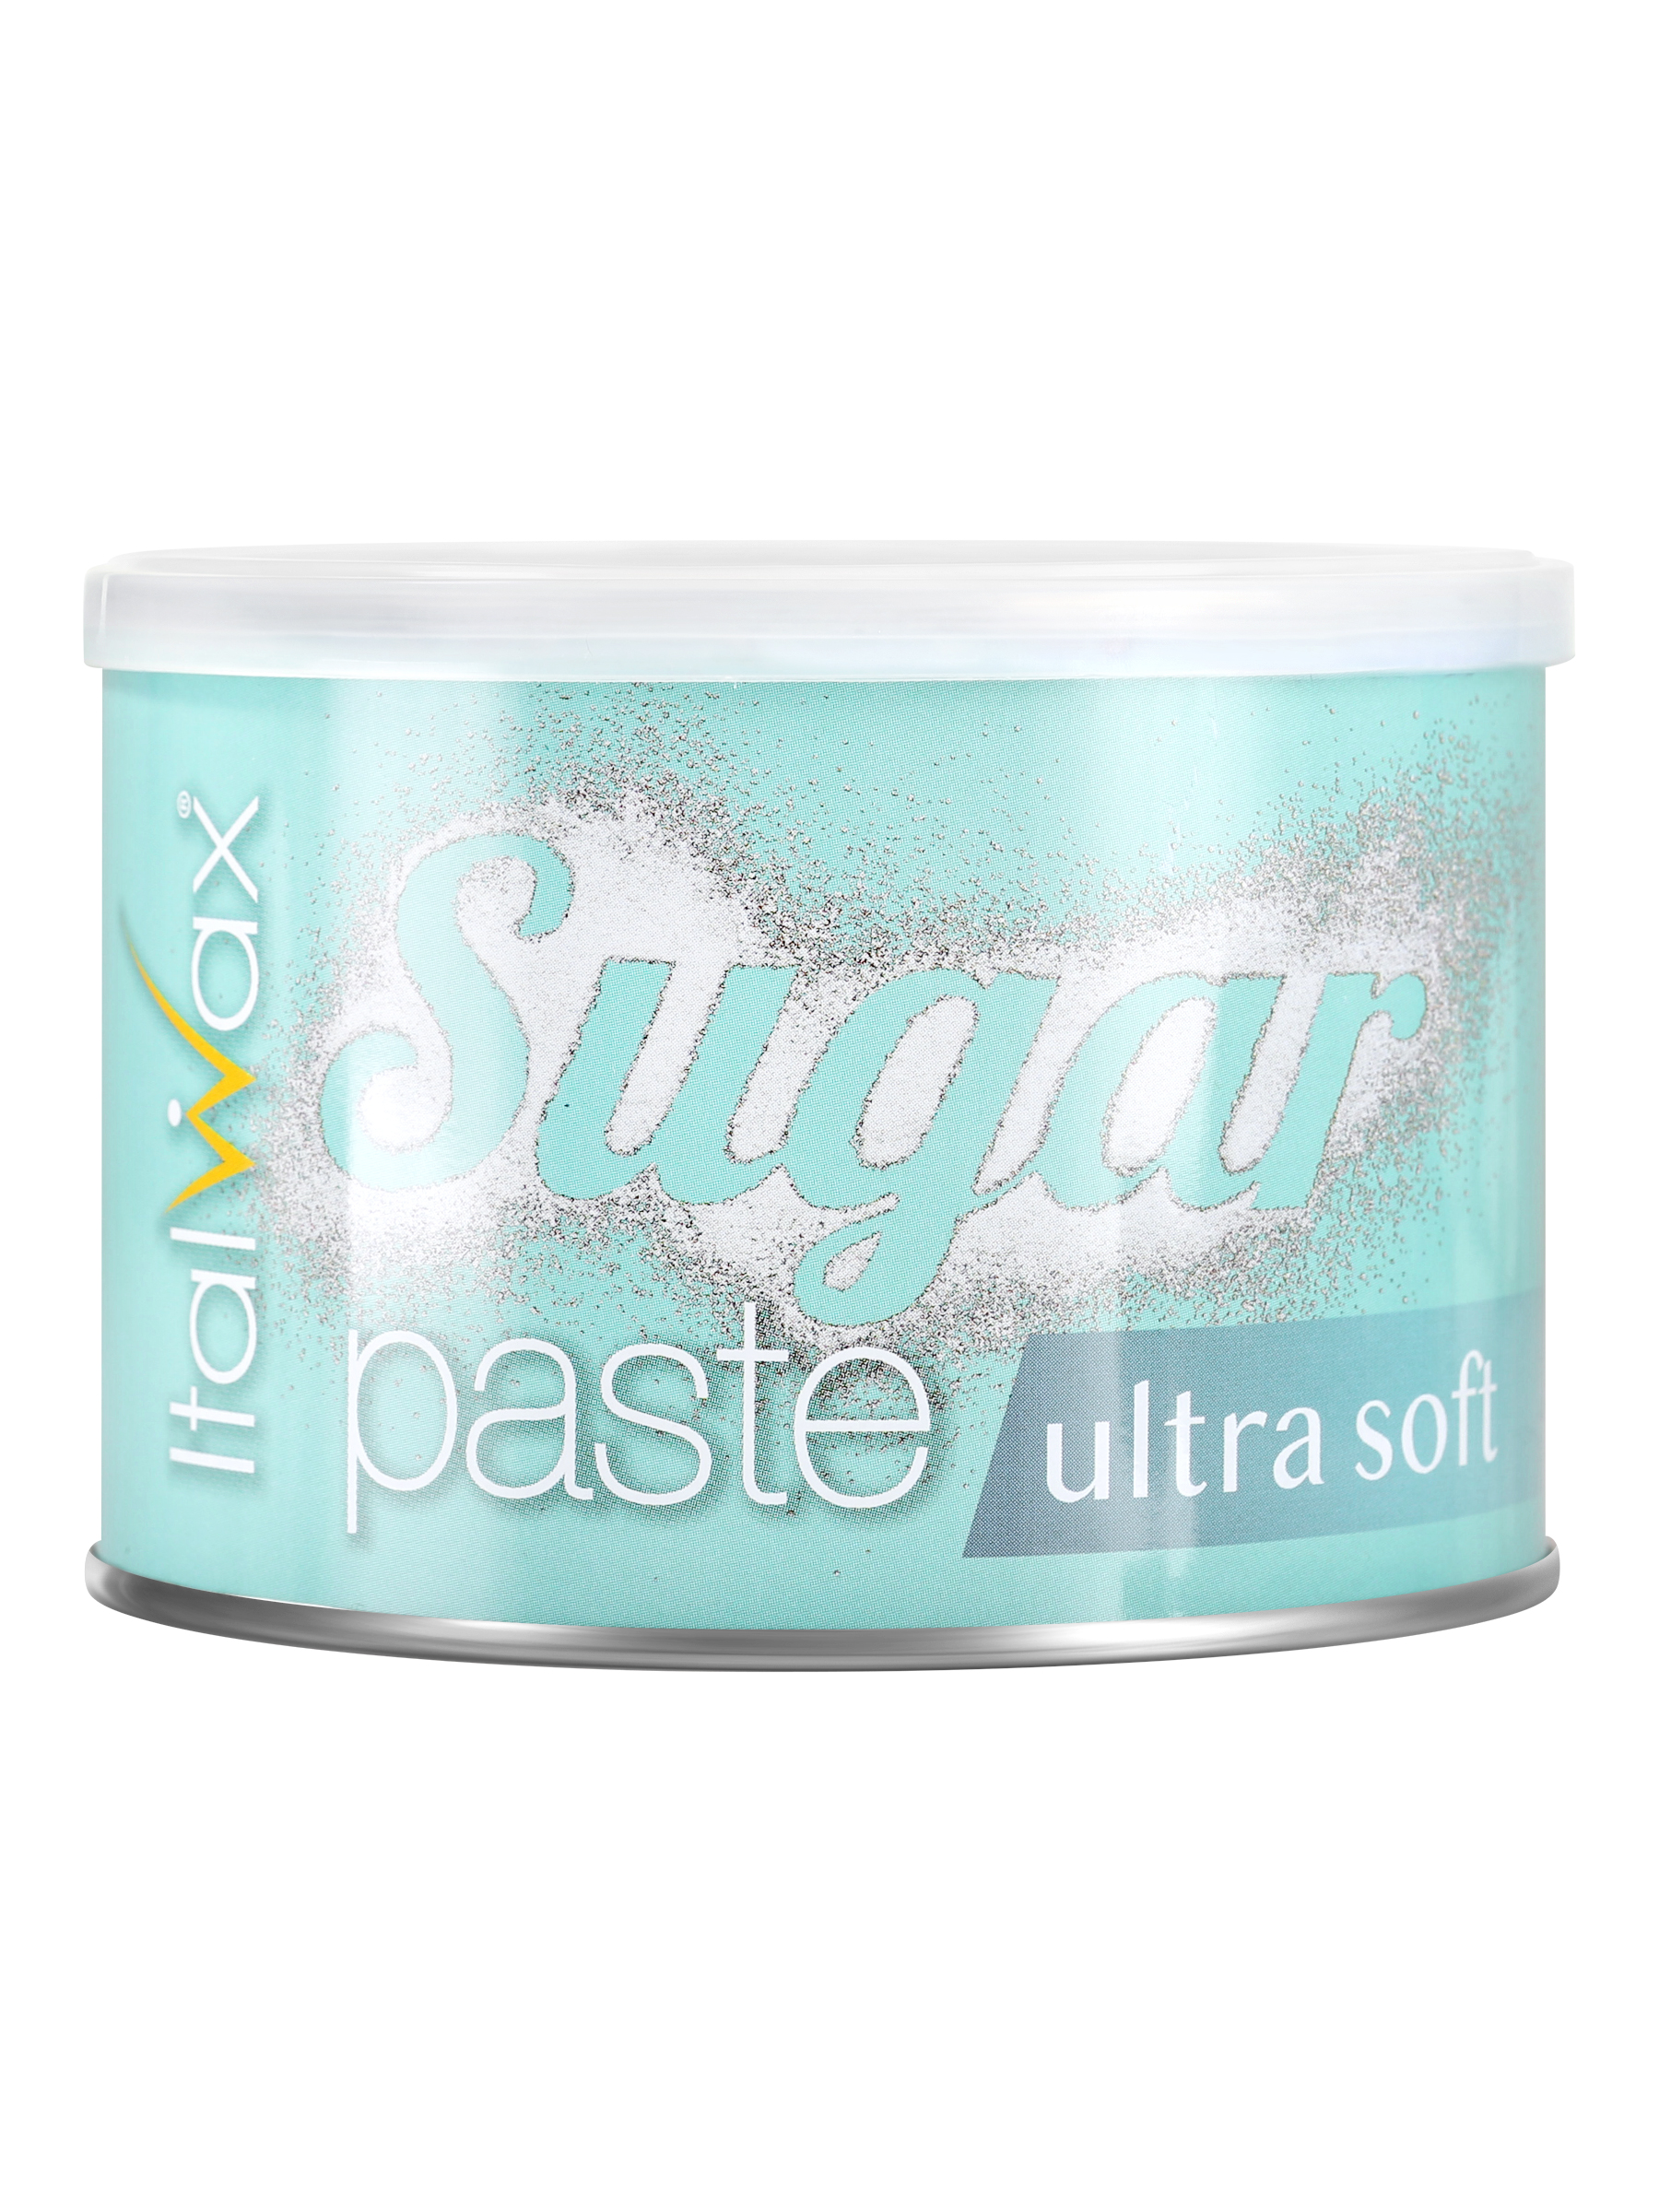 Сахарная паста для шугаринга Italwax в банке Ultra soft мягкая, удаление волос, 600 г паста для шугаринга мягкая sugar paste soft